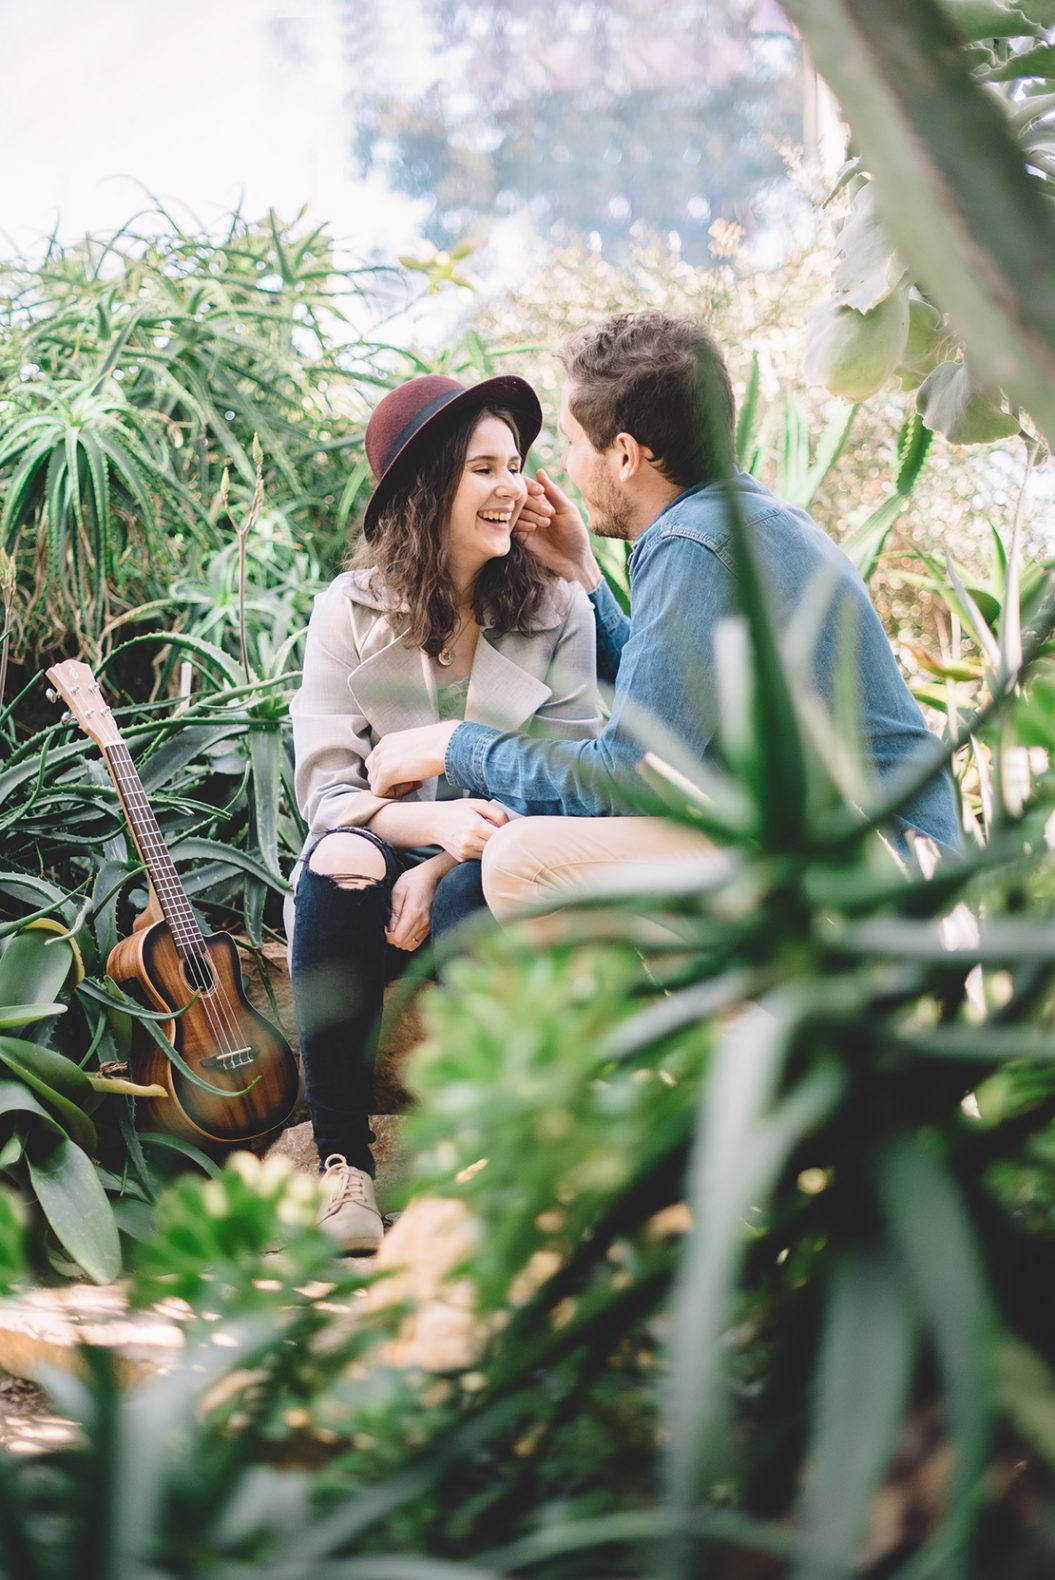 séance-photo-couple-jardin-botanique-photographe-mariage-genève